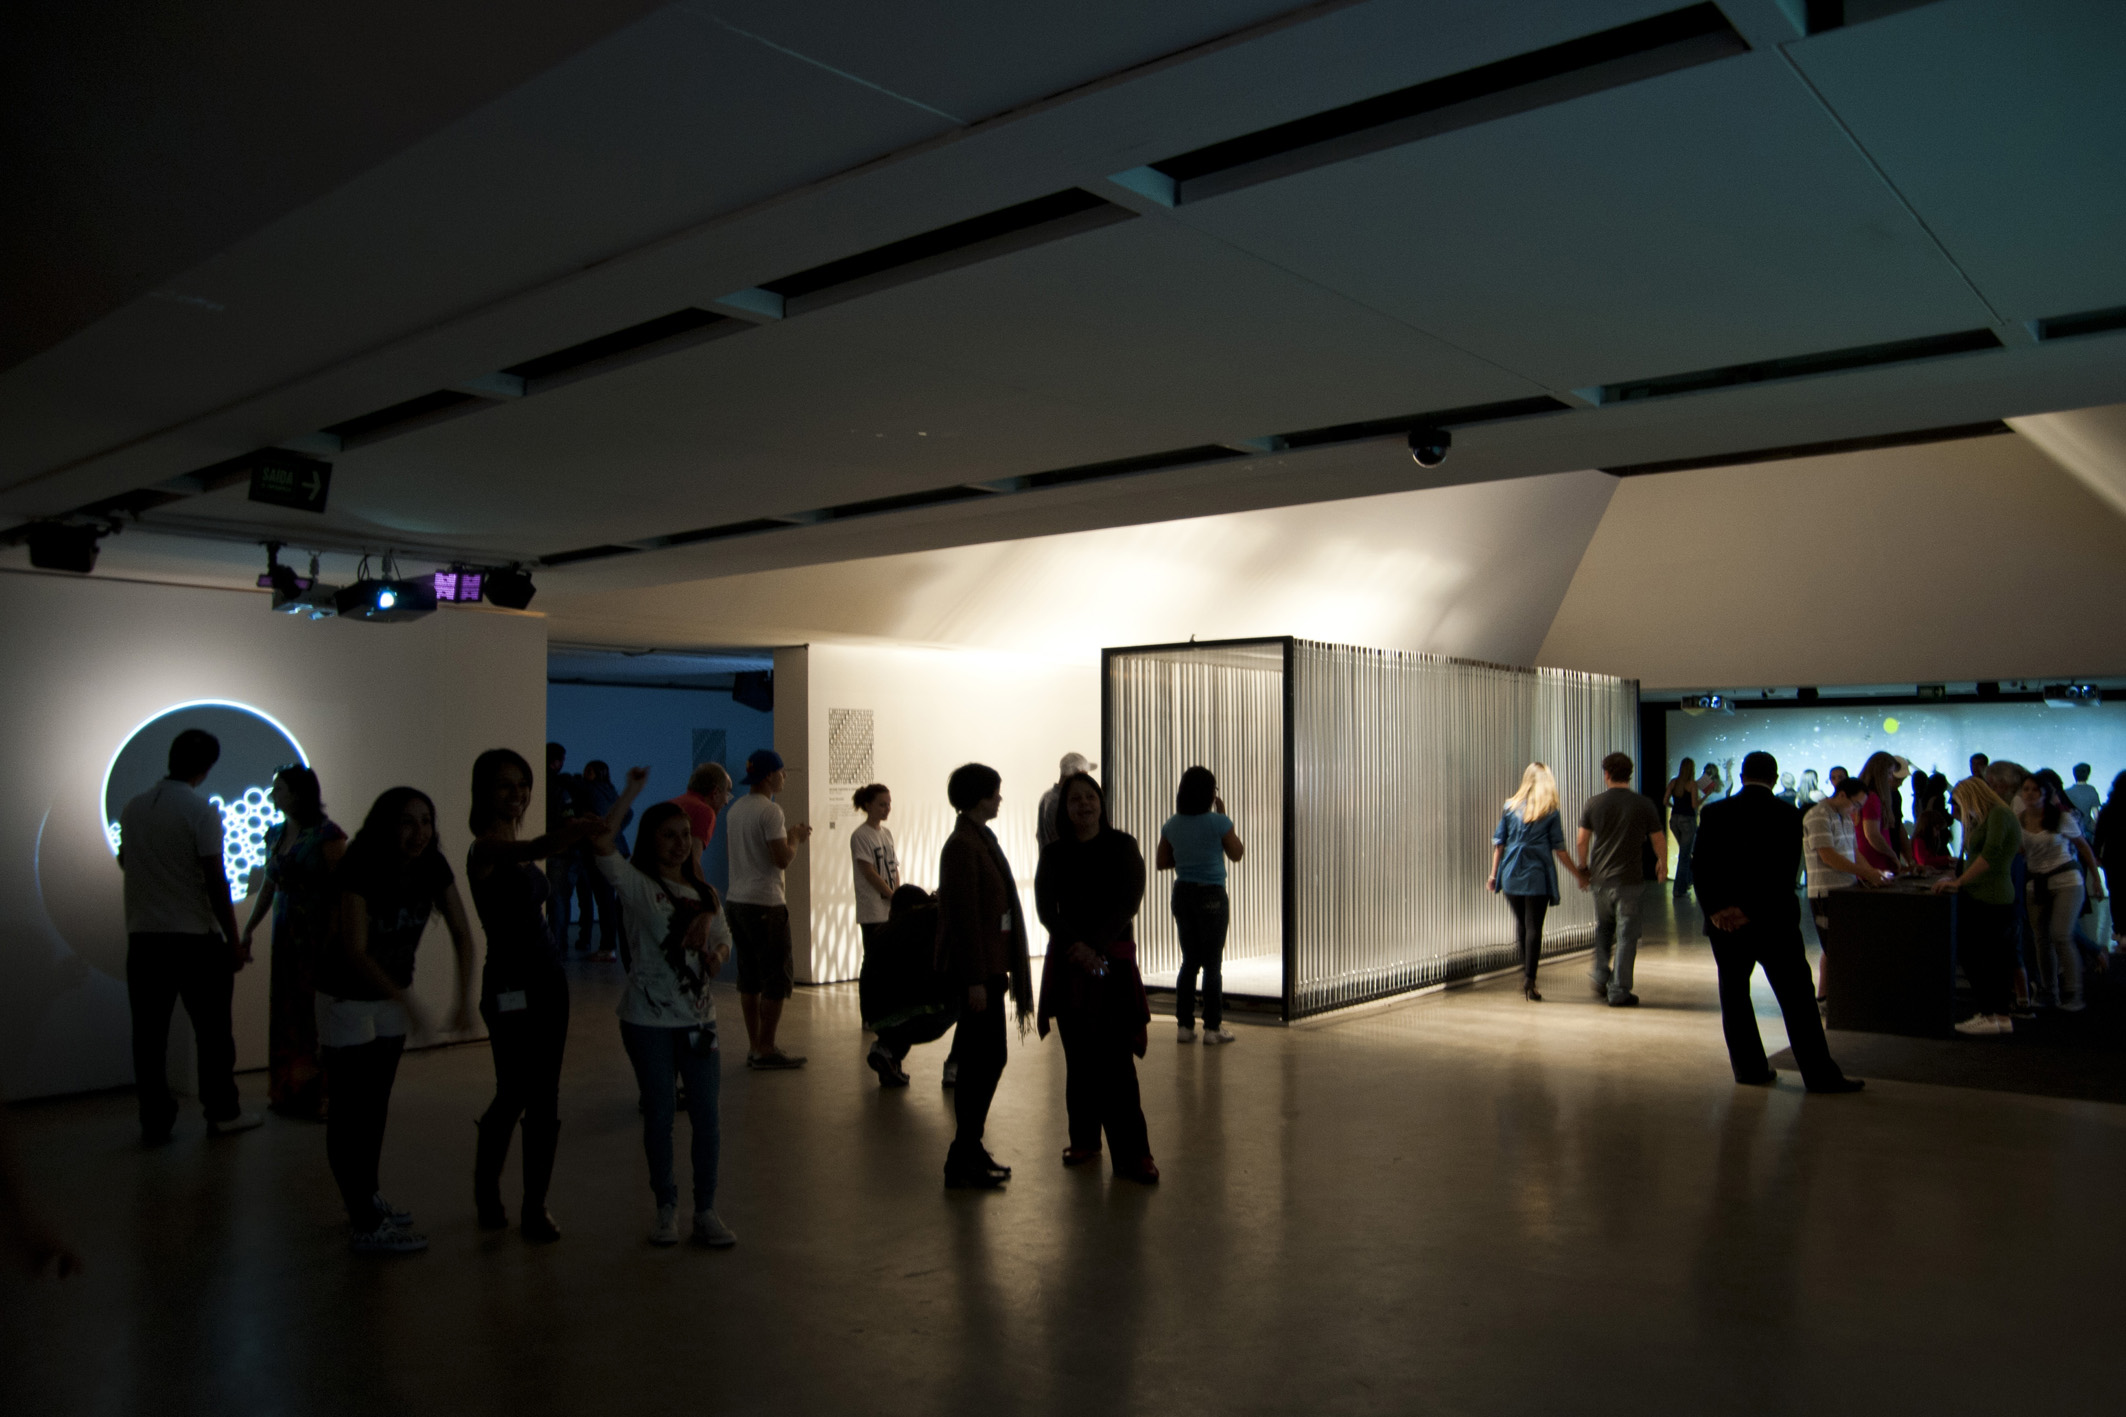    tunnel | túnel    @ centro cultural da fiesp 2012   + expo  